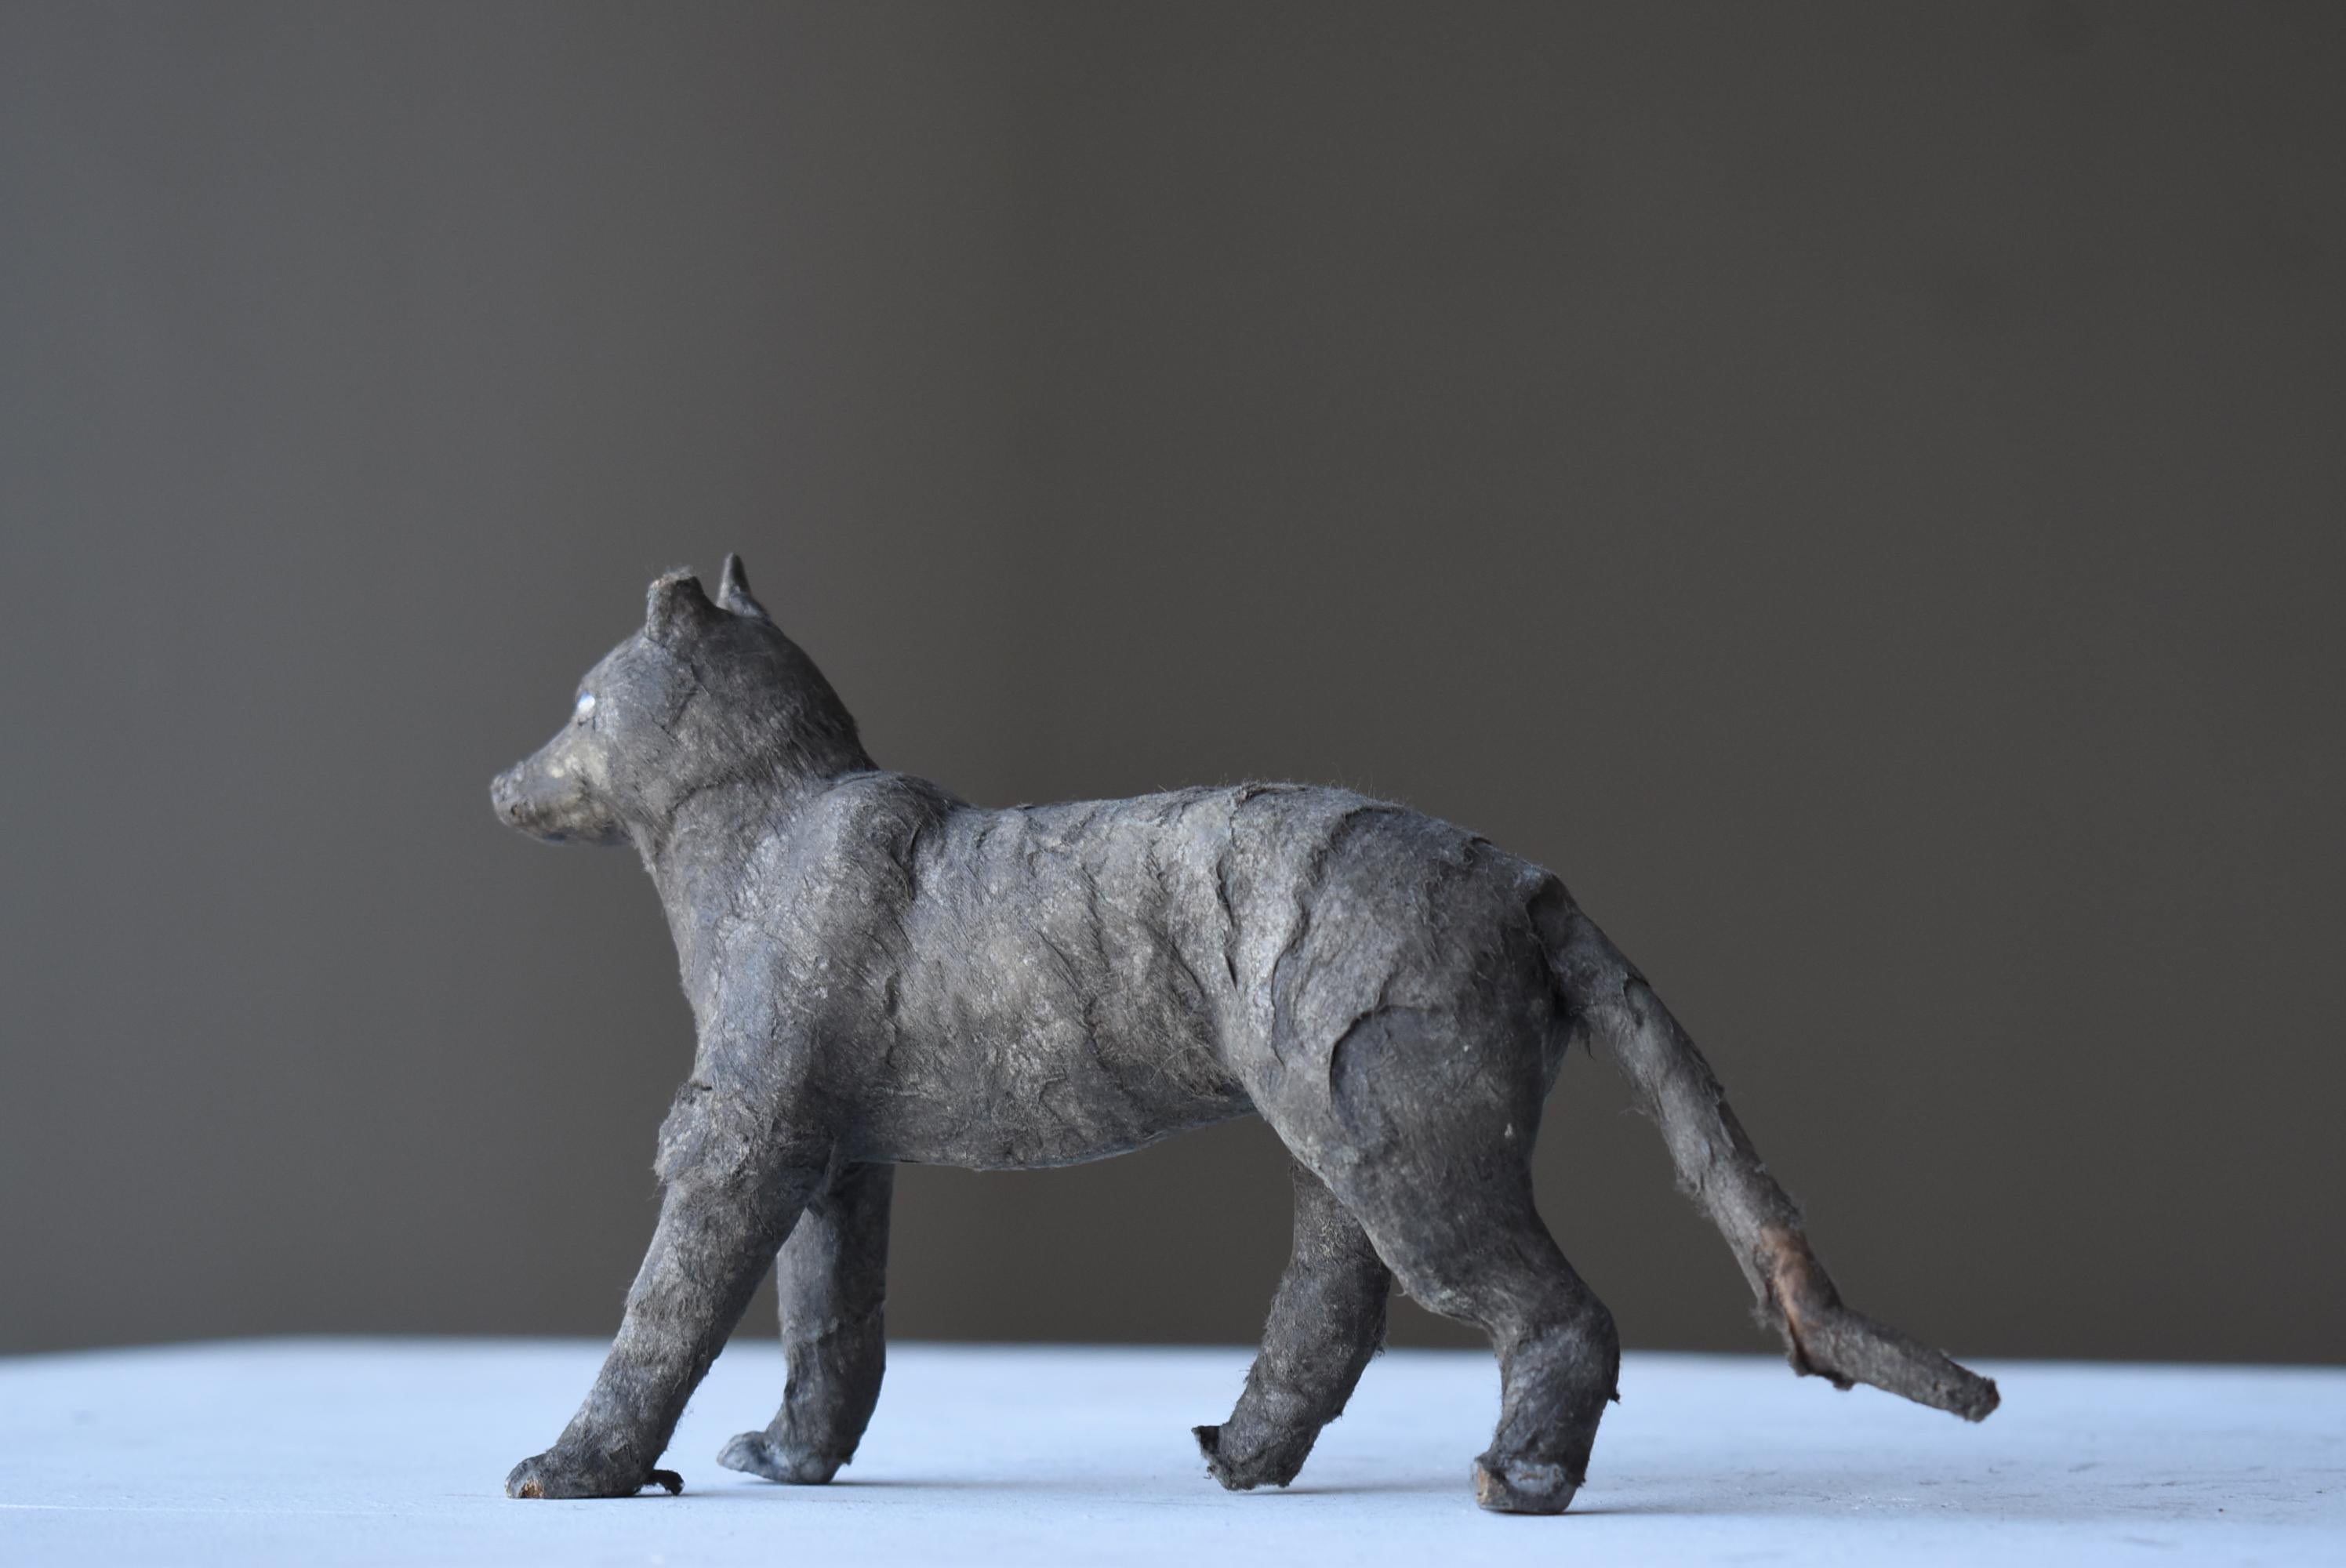 Très ancienne figurine de loup japonais.
Cette figurine date du milieu de la période Shôwa (années 1940-1960).
Il est fabriqué en le façonnant avec un morceau de bois et en le recouvrant de papier japonais.
La texture de la fourrure est exprimée de